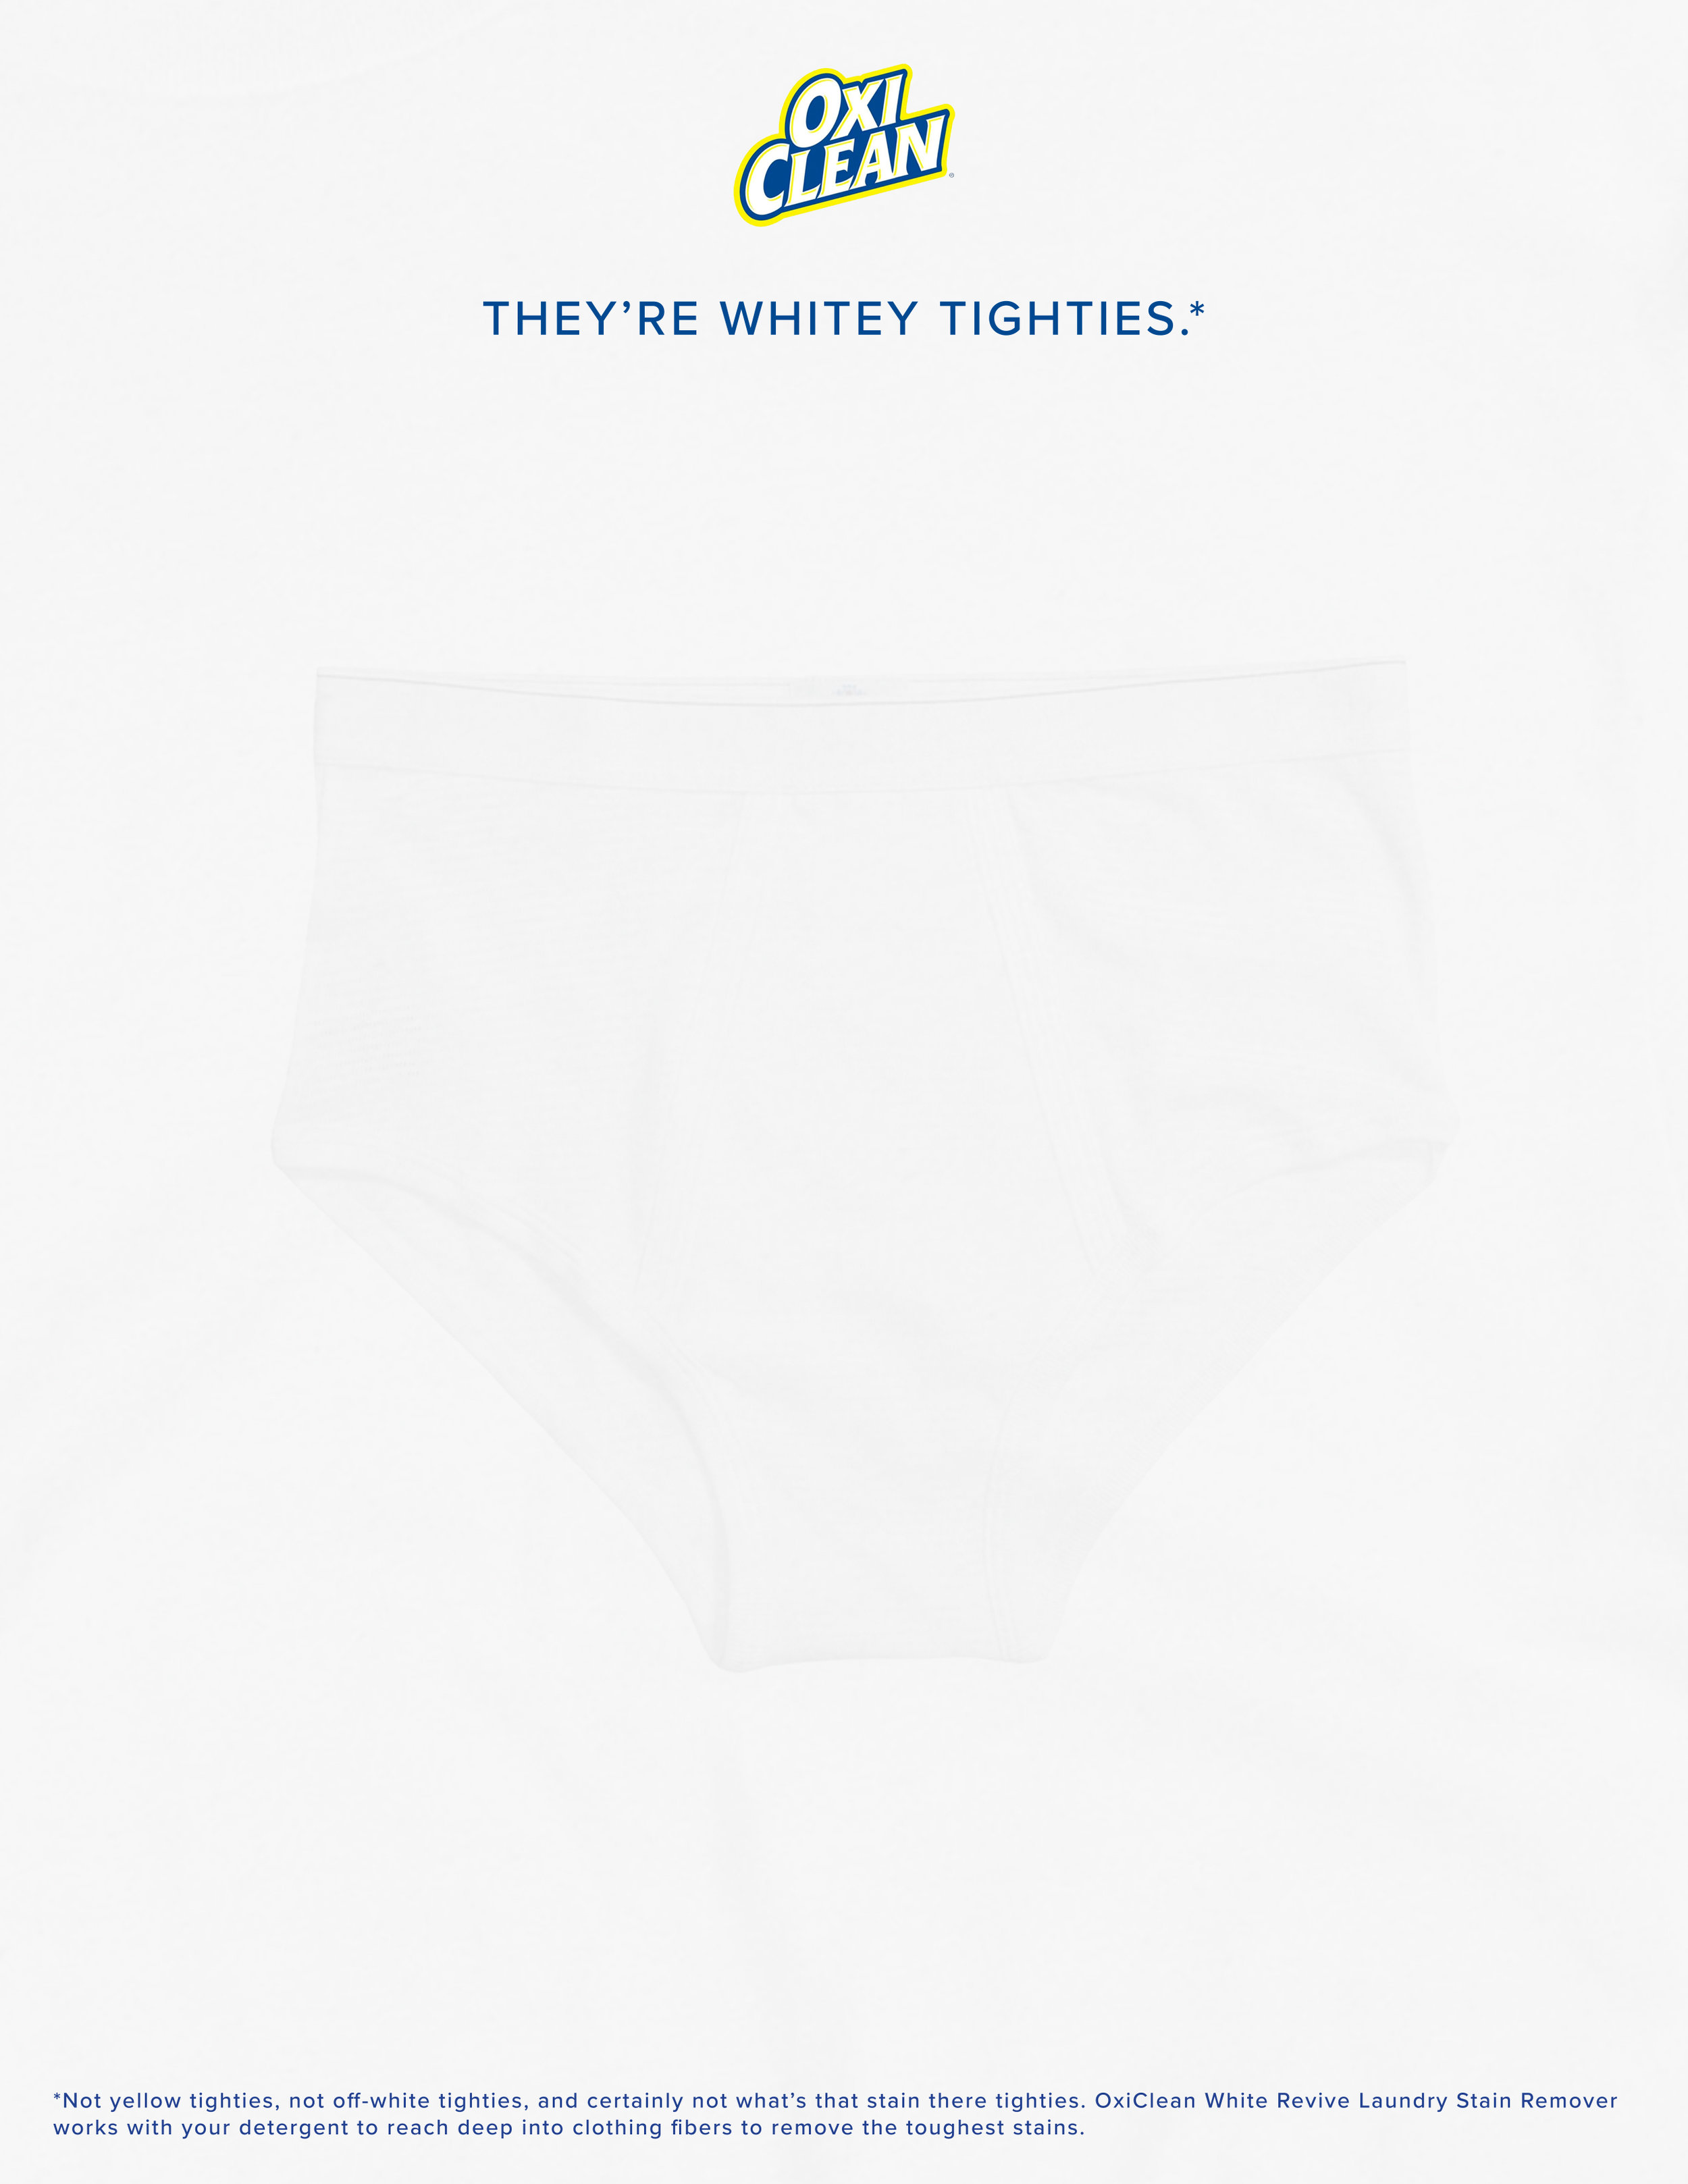 WhiteUnderwear_R01A.jpg